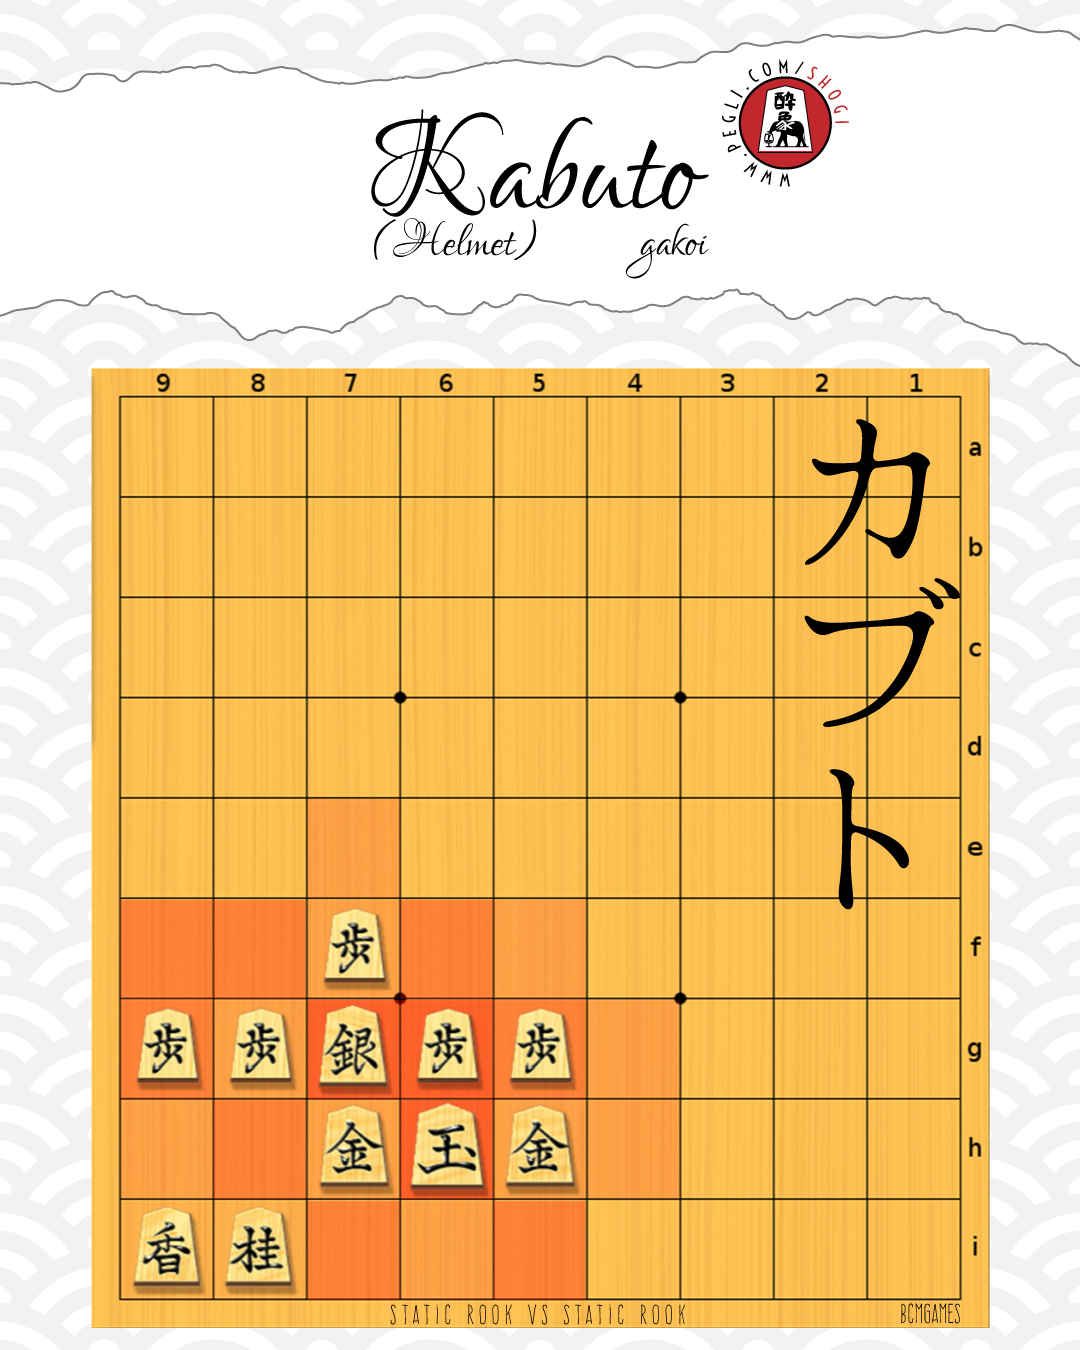 shogi - kakoi: kabuto gakoi